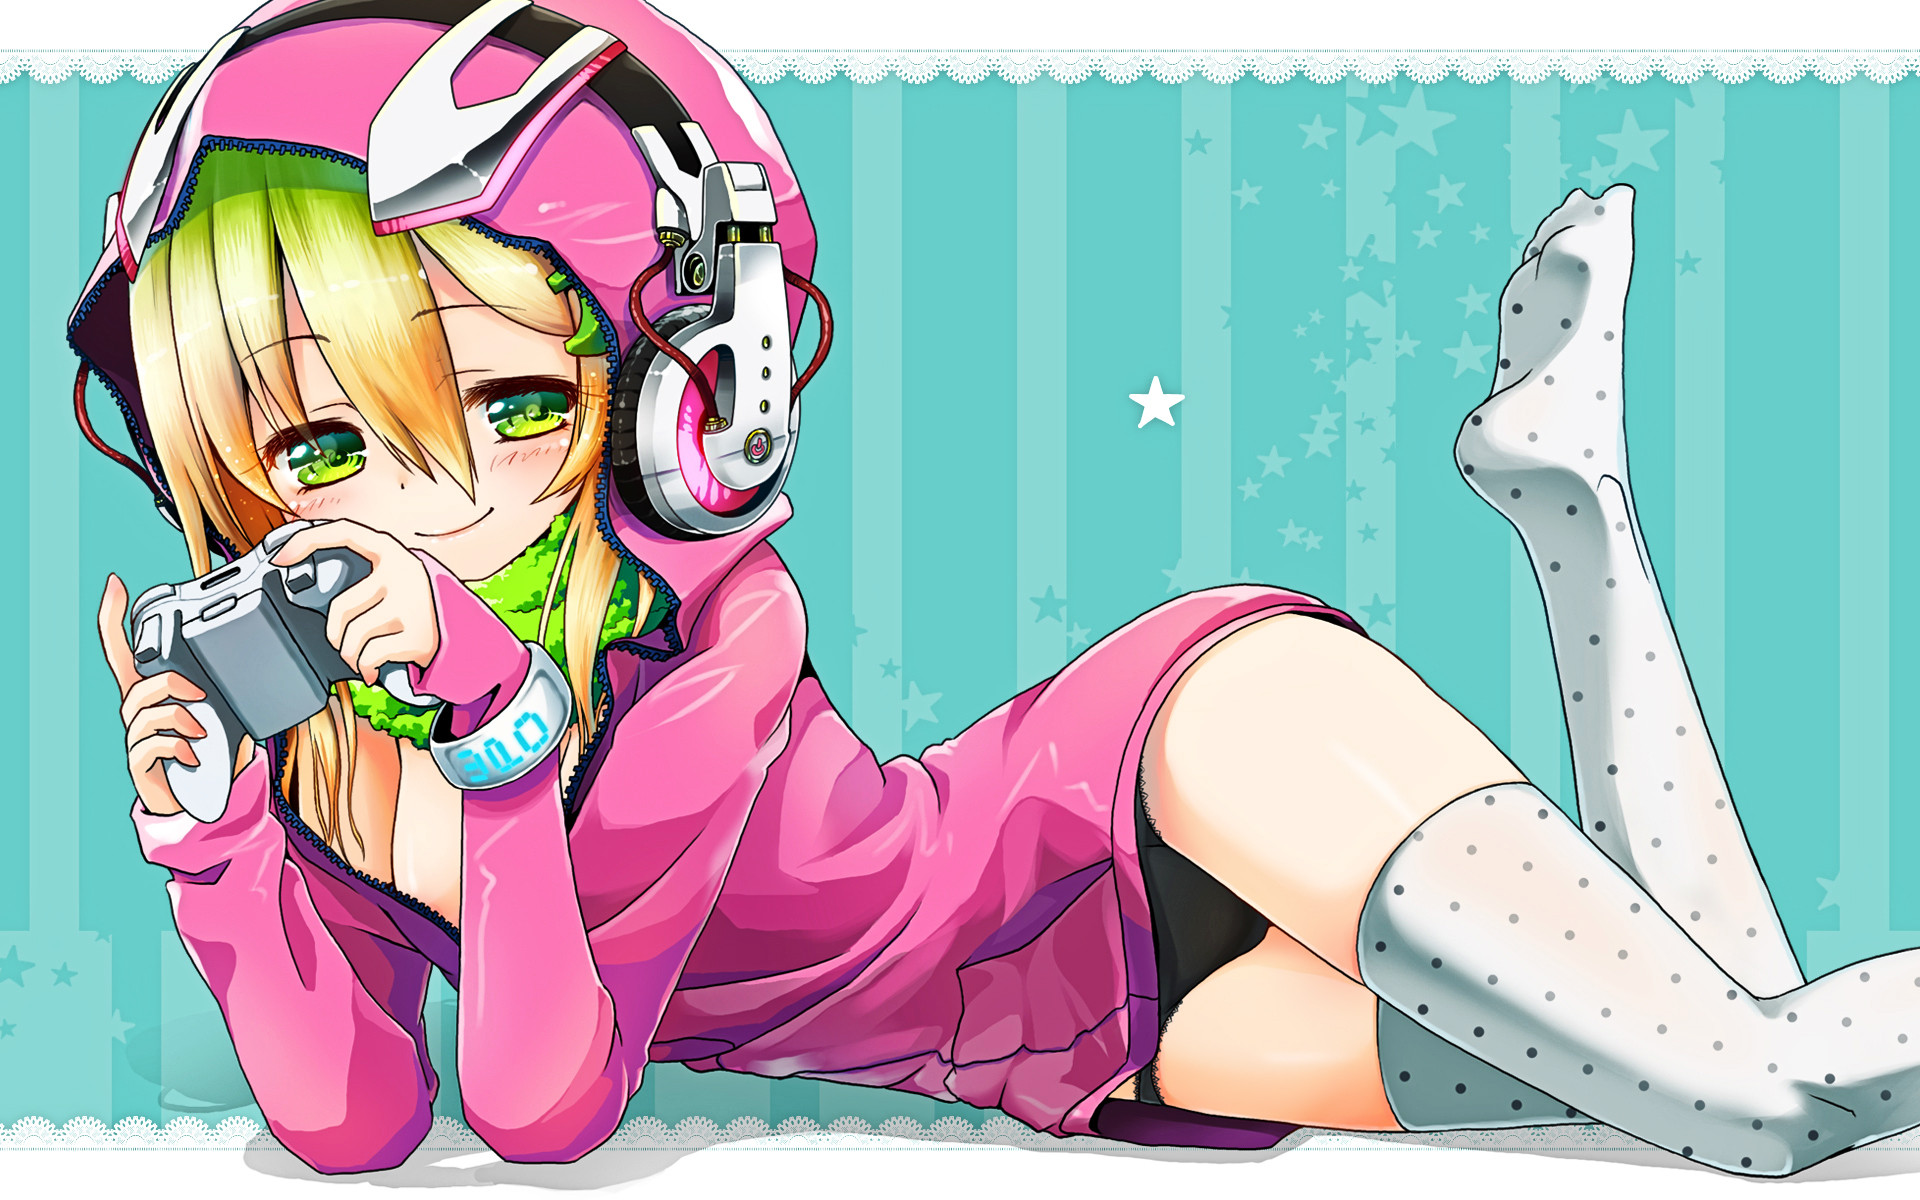 anime gamer girl loli   Imgur